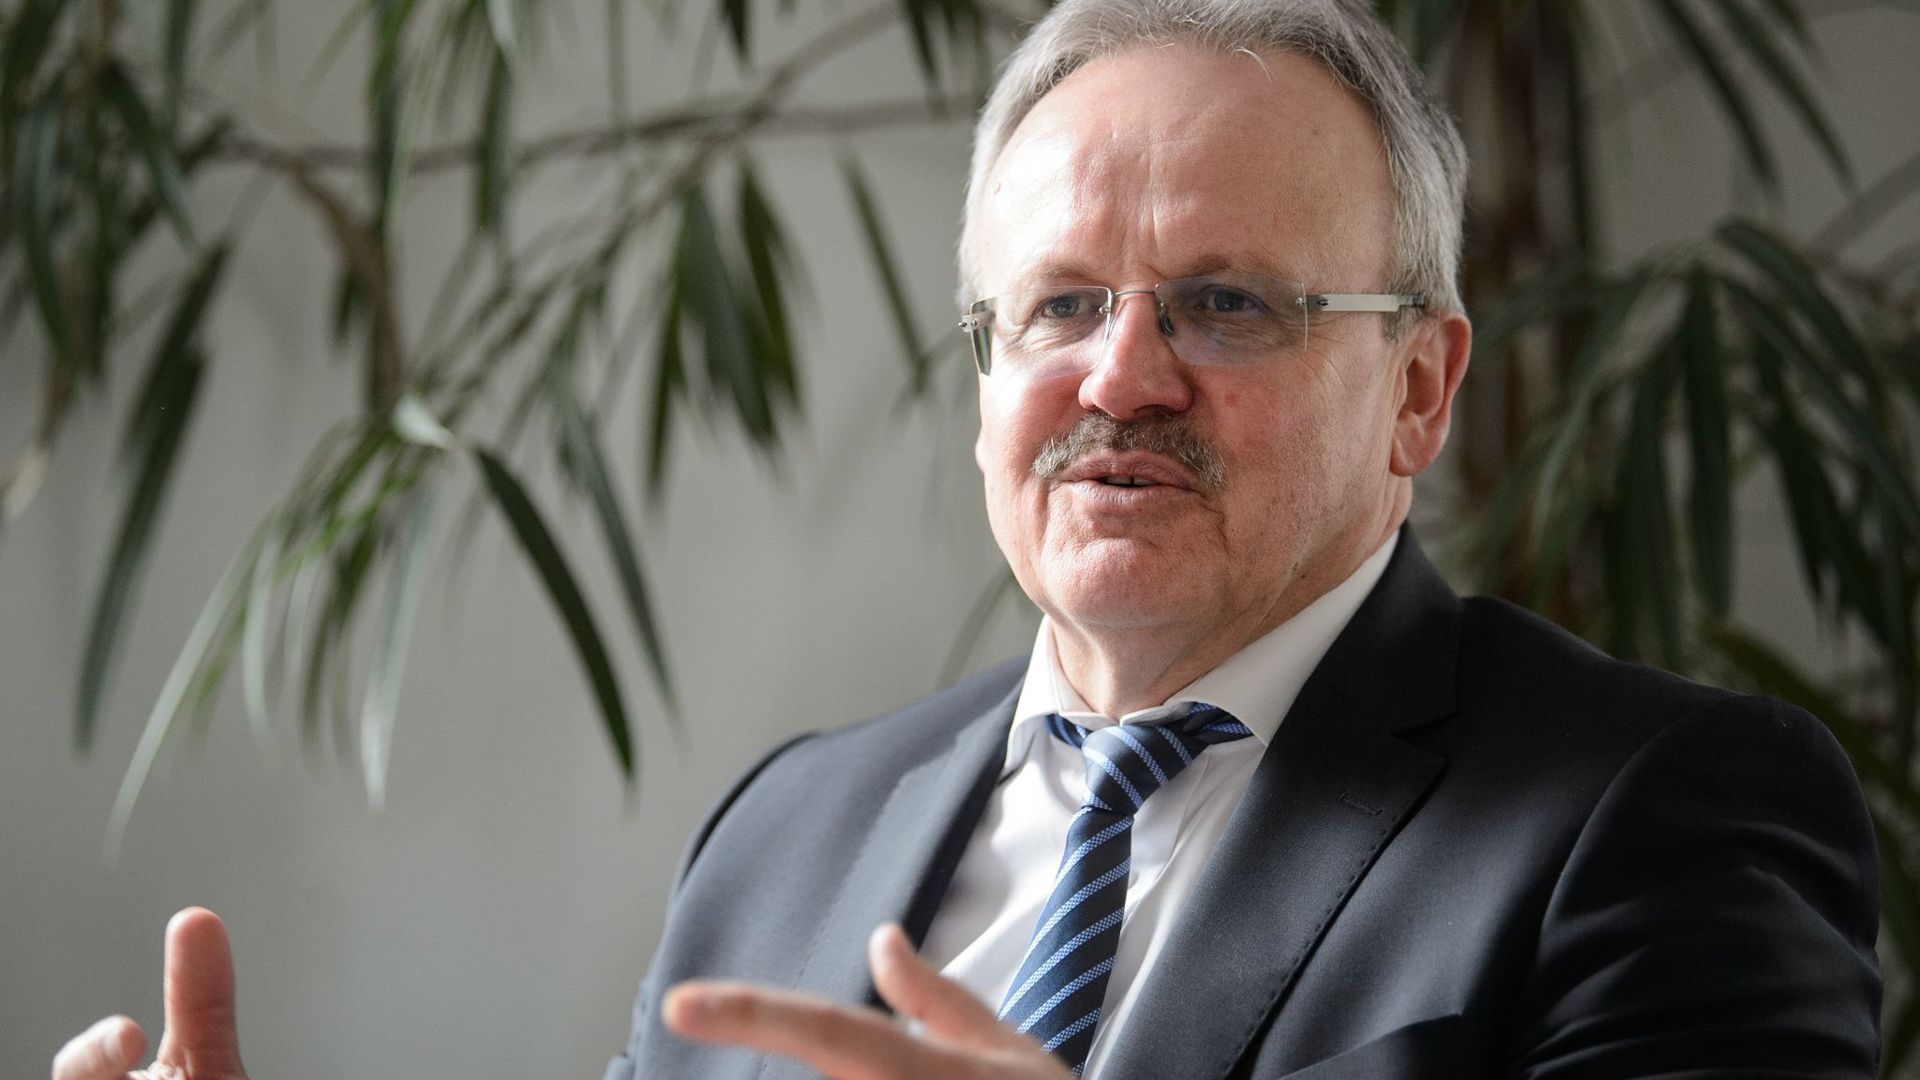 Zenon Bilaniuk, Landesvorsitzender des Bundes der Steuerzahler Baden-Württemberg, spricht bei einem Interview.